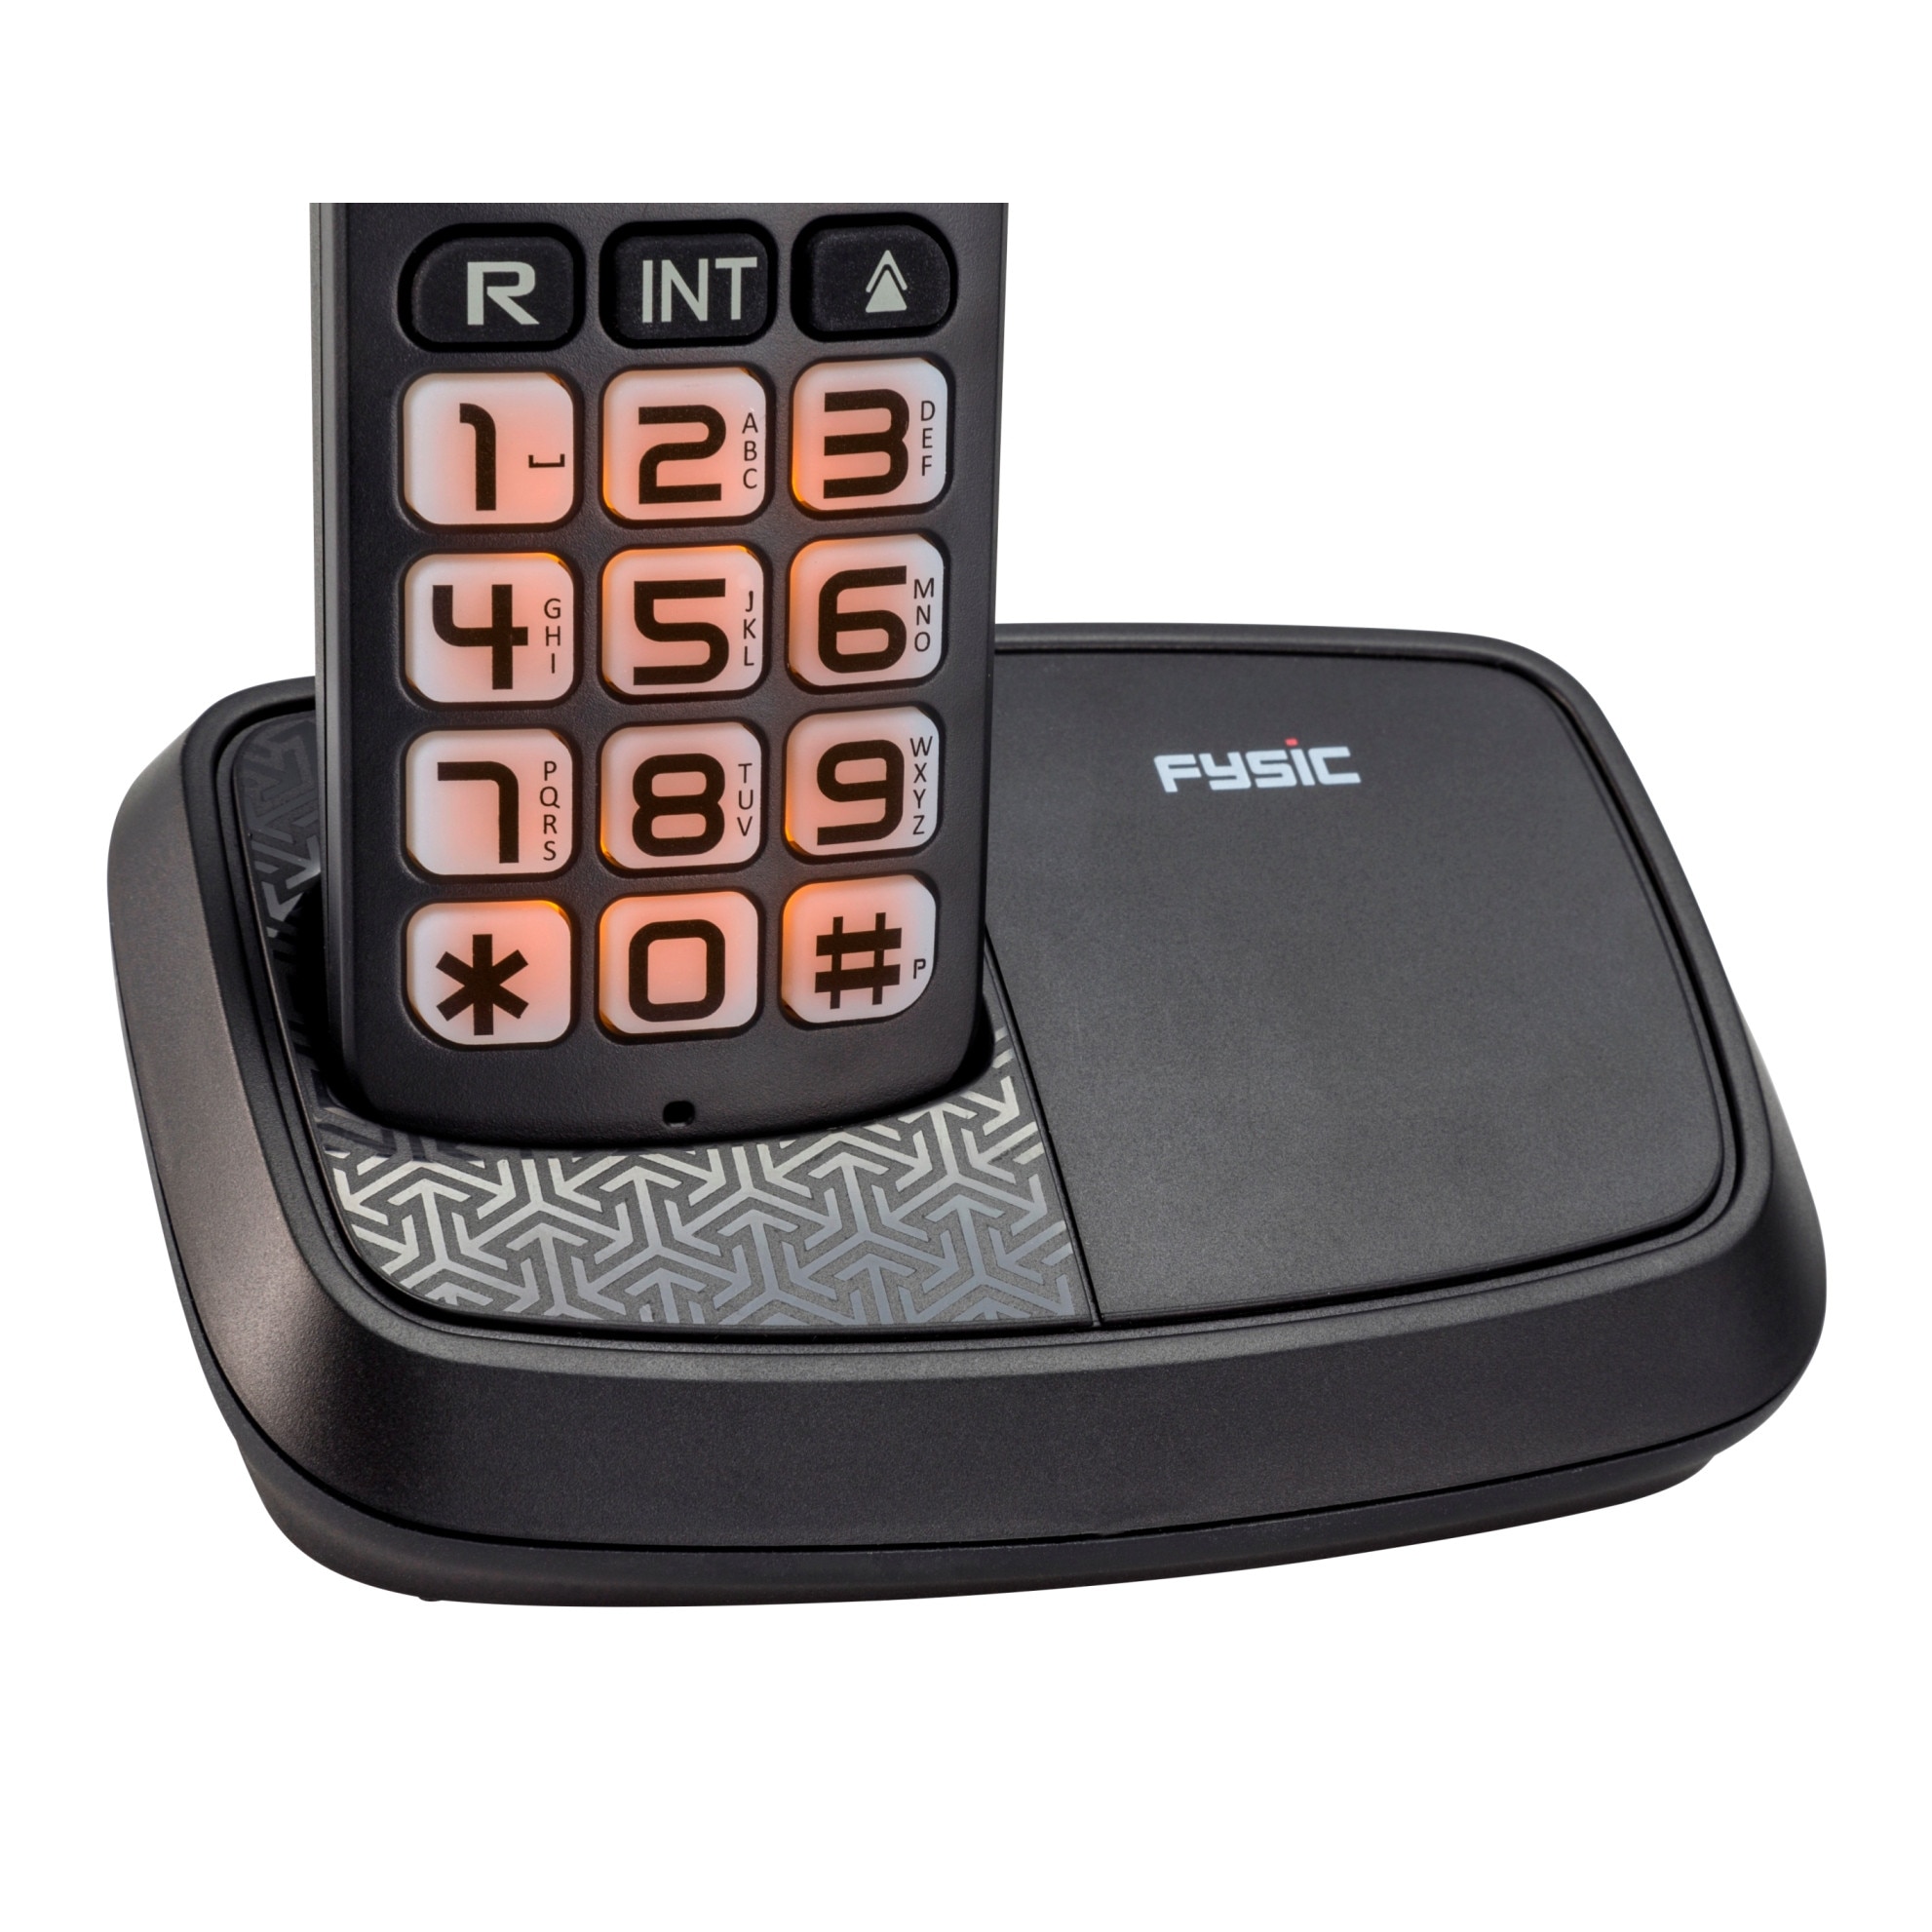 Телефон стационарный беспроводной домашний. Fysic DECT Combo. Телефон стационарный беспроводной. Телефон Fysic. Fysic FX-8025.